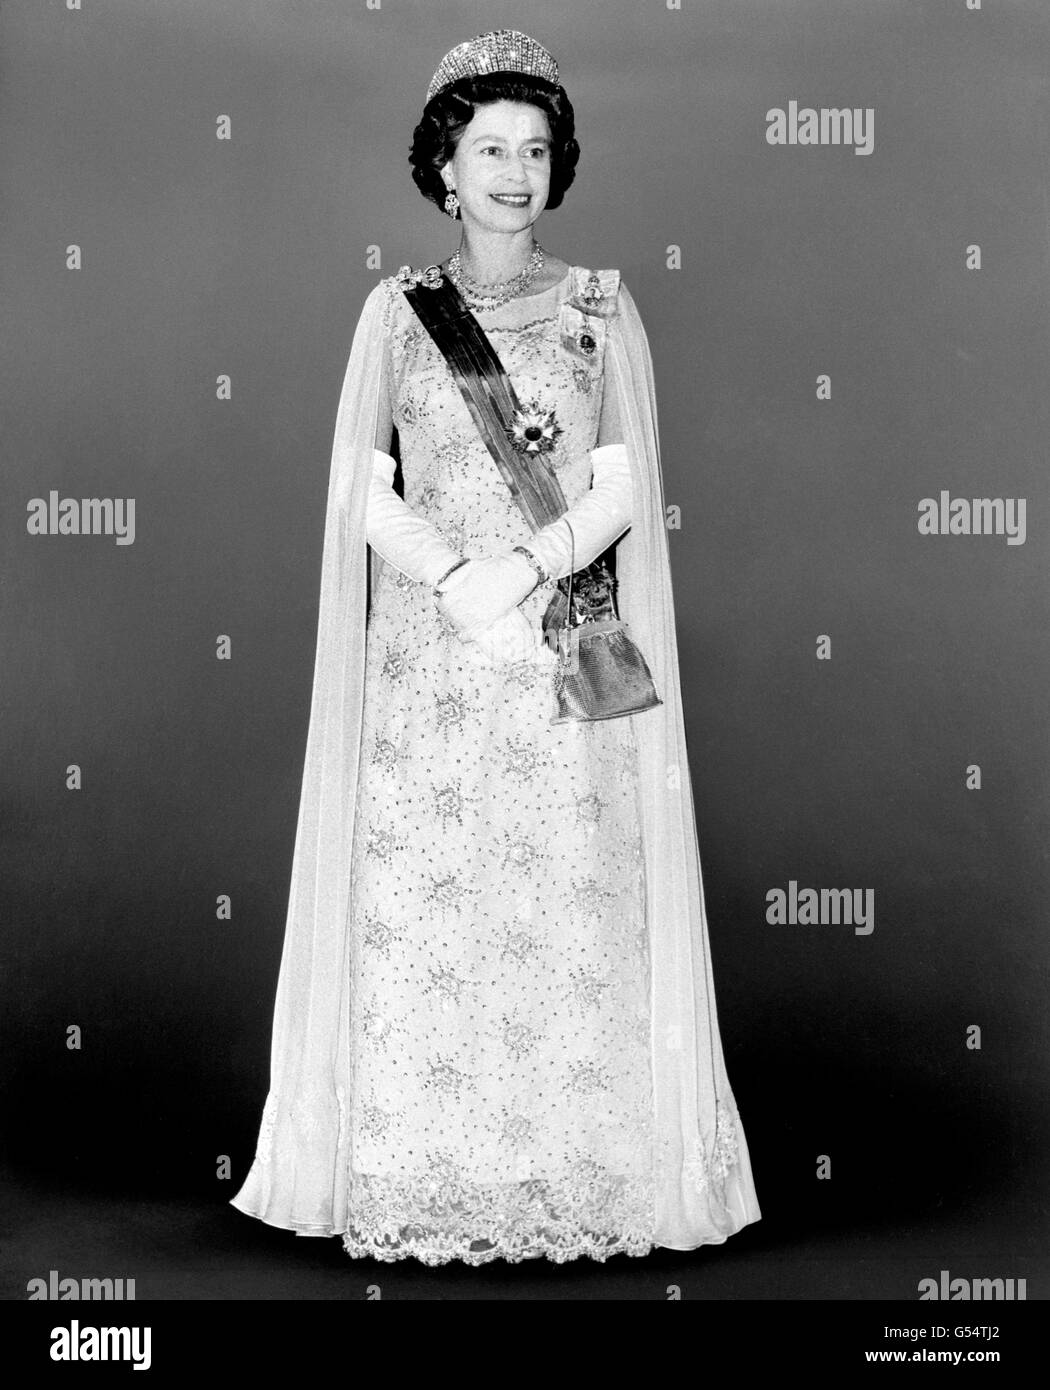 Image - La reine Juliana des Pays-Bas Visite d'État - Londres Photo Stock -  Alamy